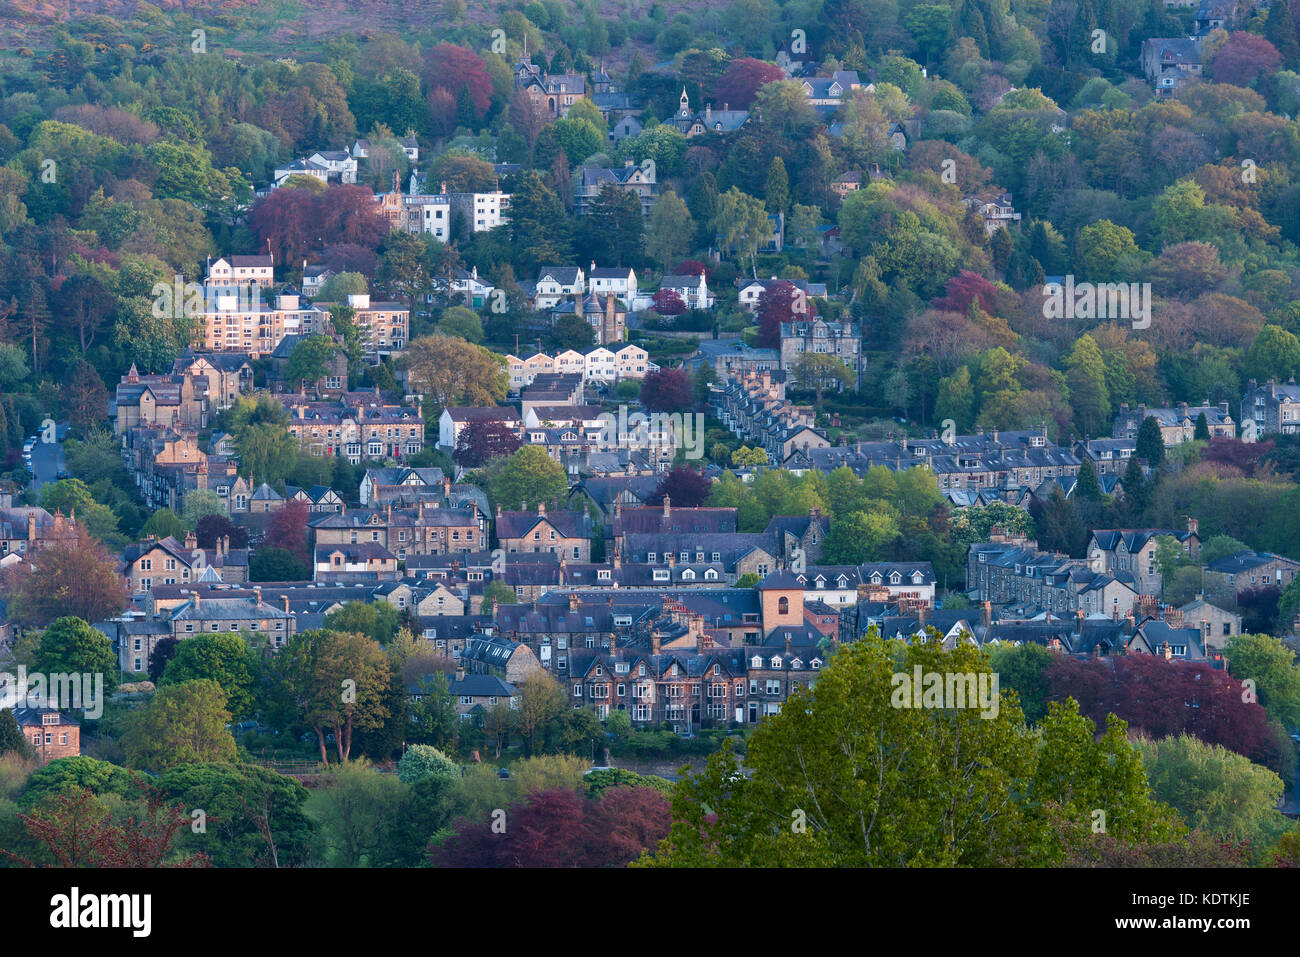 Haut de printemps vue sur colline, blotti dans les bâtiments résidentiels bois coloré dans la vallée Wharfe - Ilkley town, West Yorkshire, Angleterre, Royaume-Uni. Banque D'Images